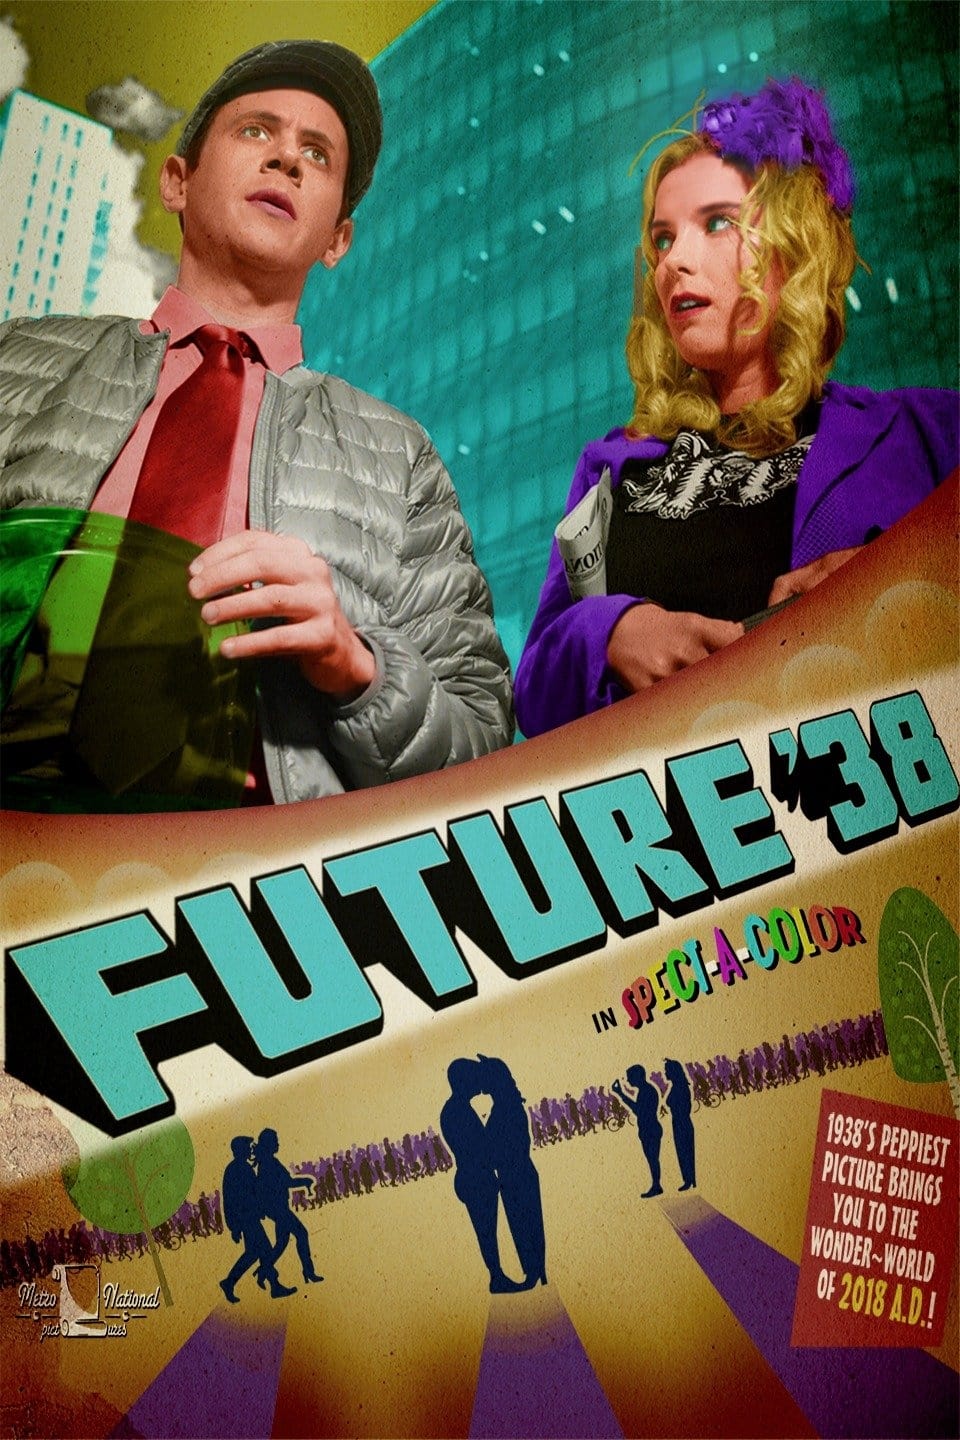 Future '38